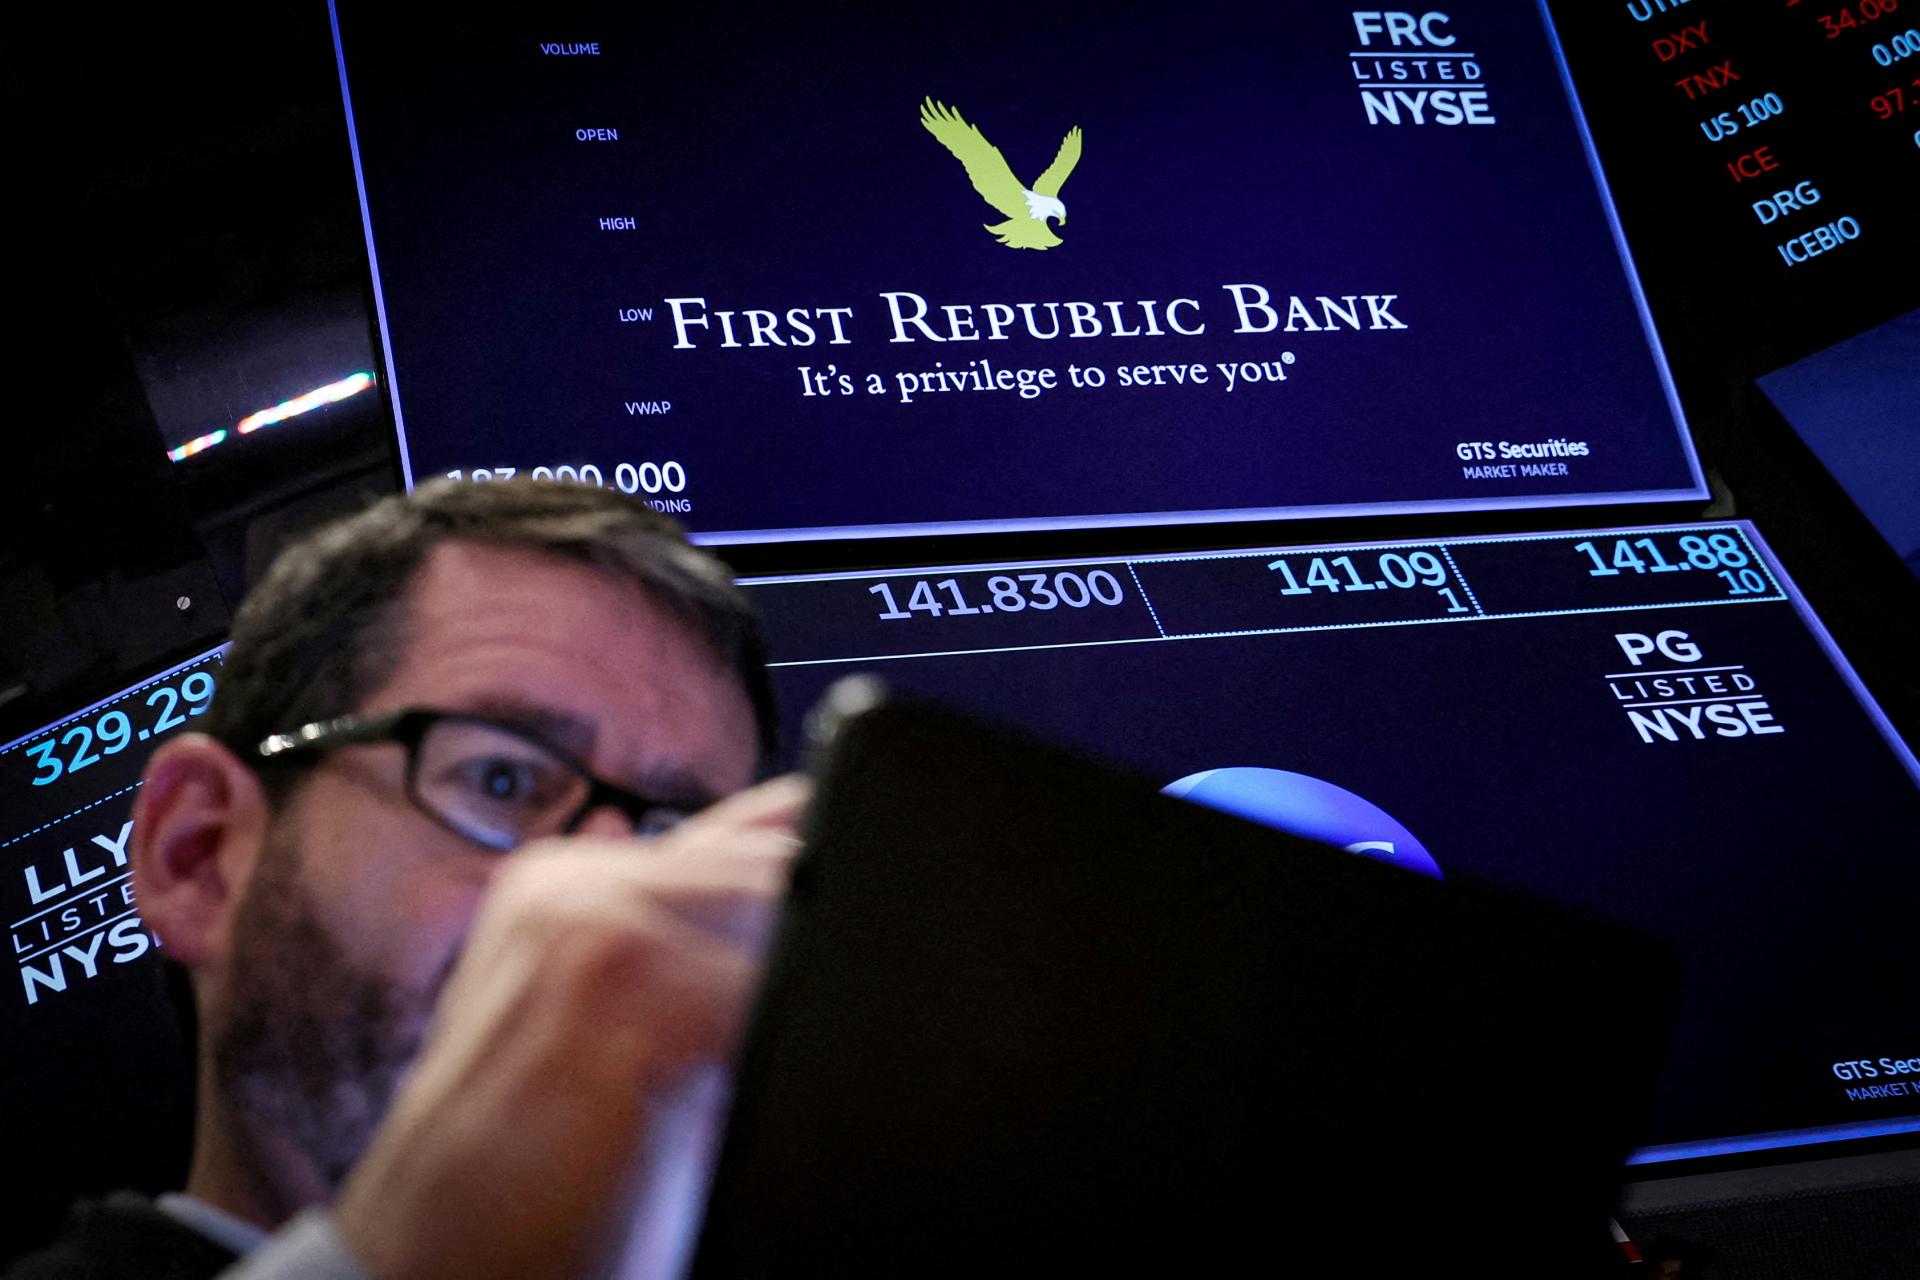 Hrozil pád ďalšej americkej banky, First Republic Bank prišla o vklady vo výške 100 miliárd dolárov